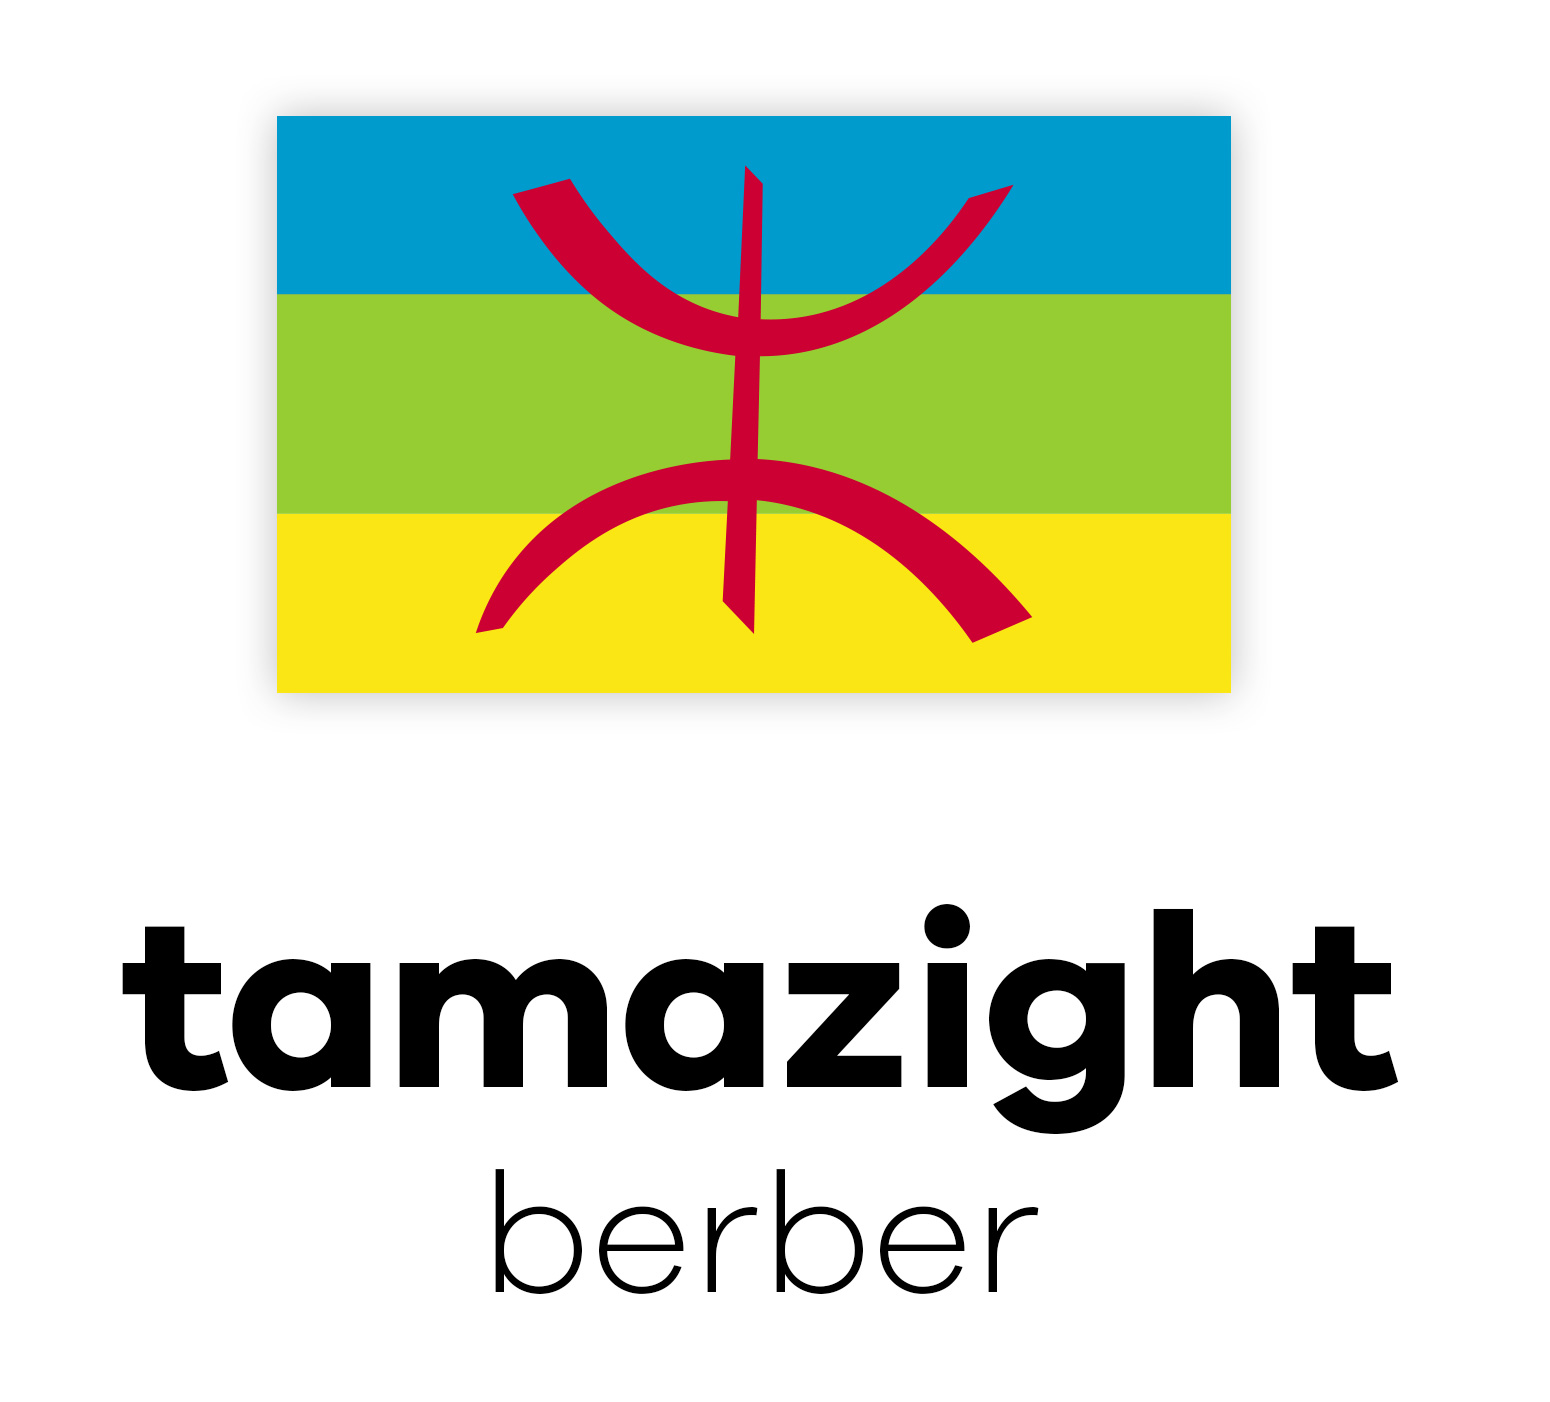 Flagge der Berber mit blau, grün, gelb und rotem Symbol, darunter die Worte "tamazight berber".